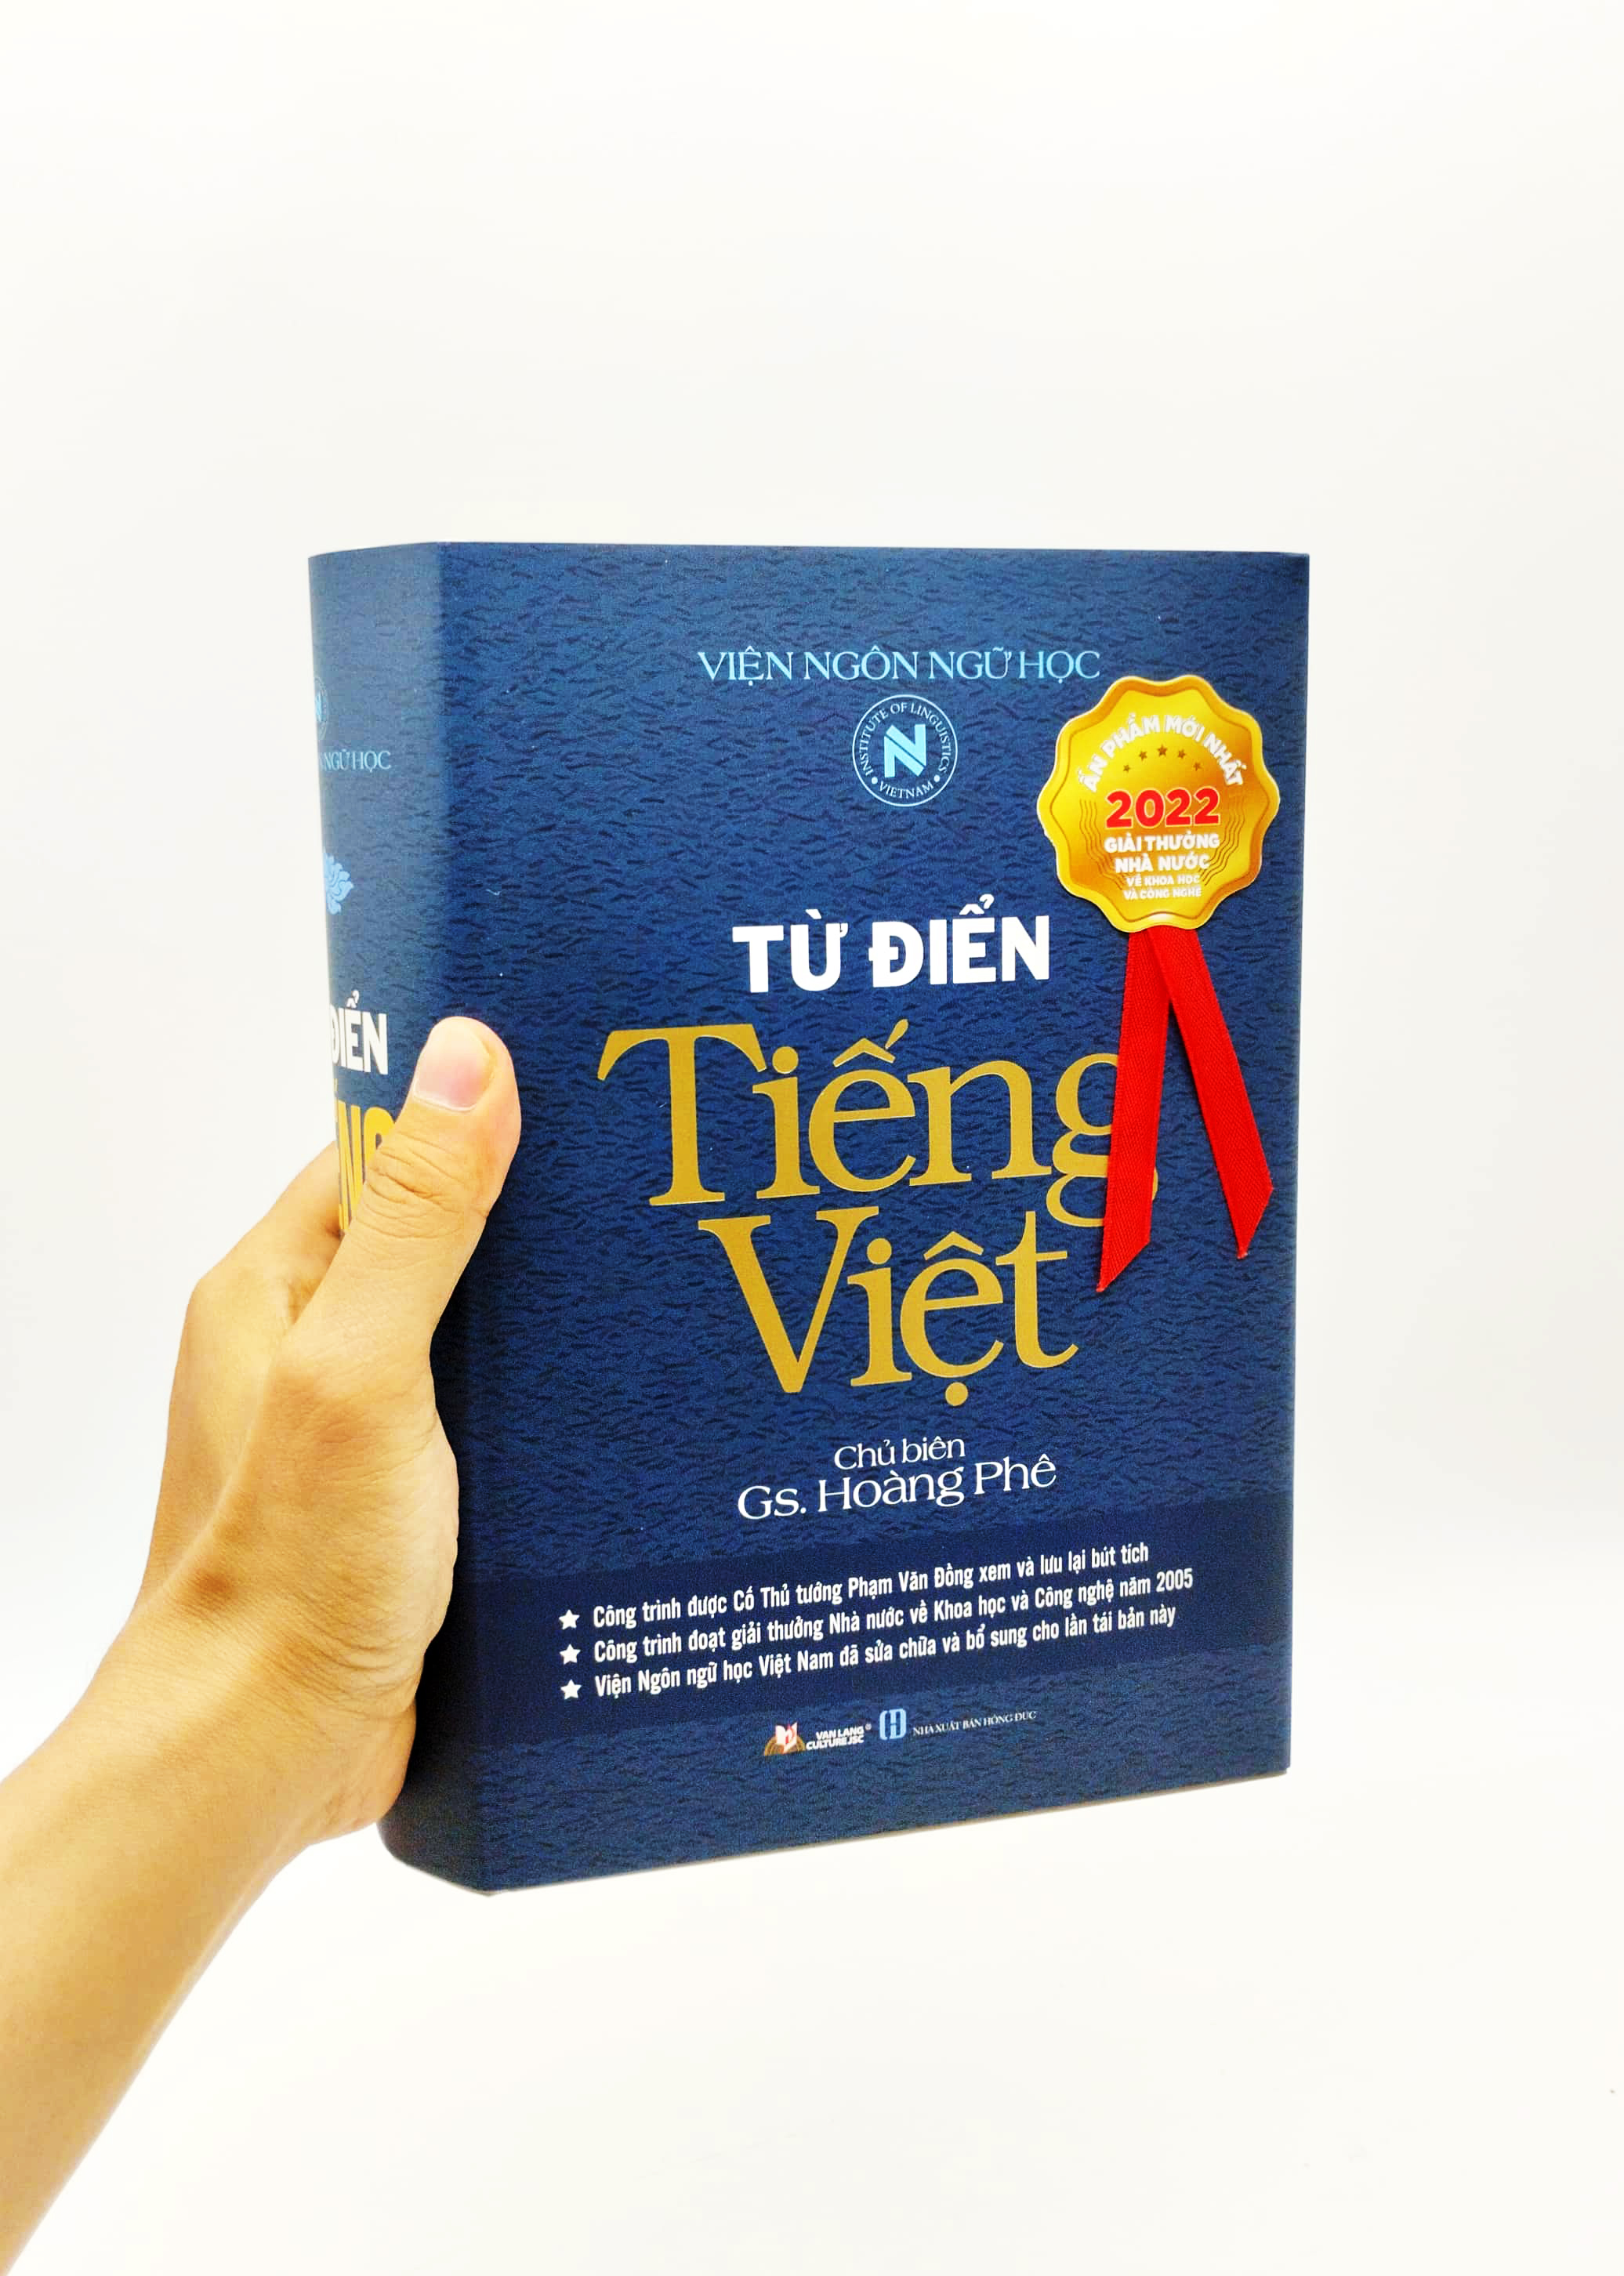 Từ Điển Tiếng Việt Hoàng Phê PDF